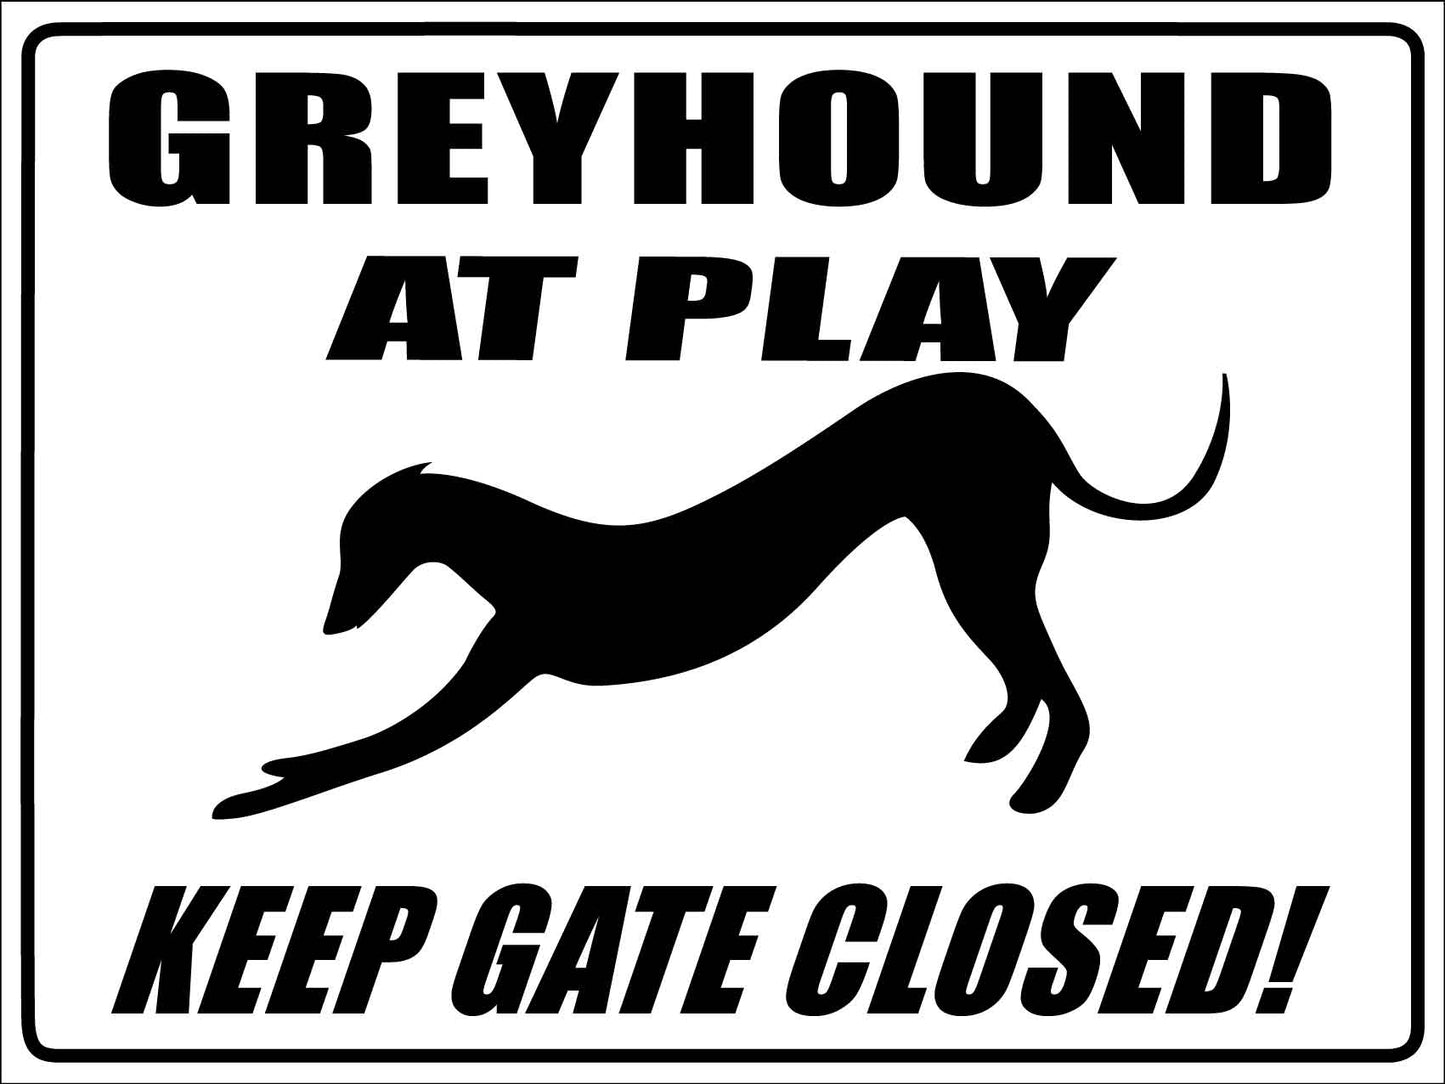 Greyhound At Play Keep Gate Closed Sign